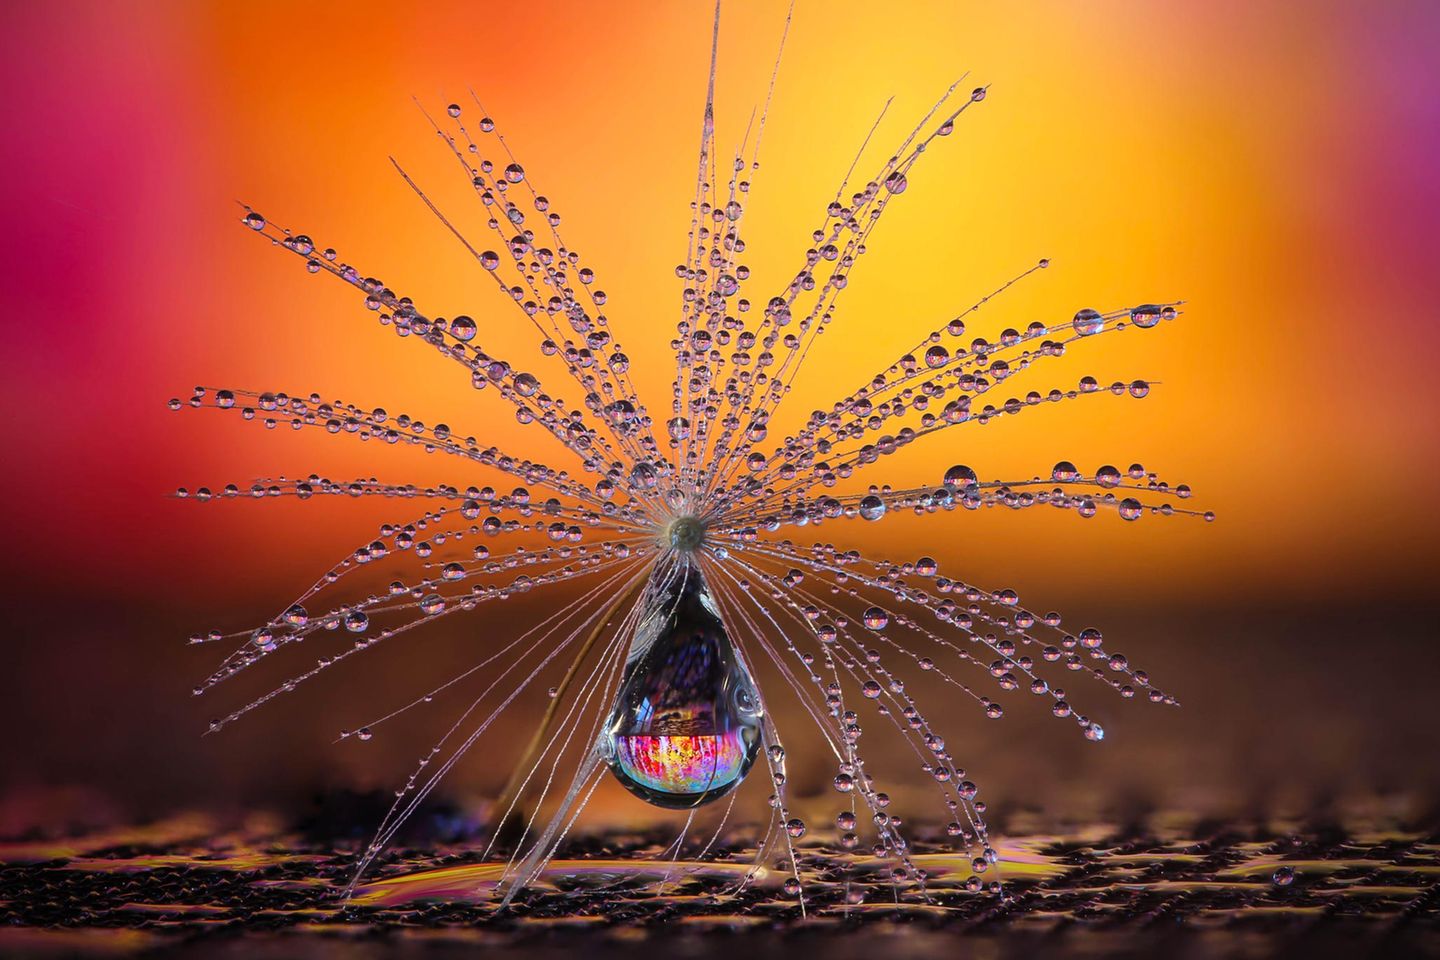 Das Schirmchen einer Pusteblume - mit feinsten Wassertropfen benetzt - verwandelt sich in ein Fanatsie-Objekt. In Szene gesetzt hat dieses faszinierende Gebilde Petra Jung aus der Schweiz. Die Fotografin wurde Siegerin in der Kategorie „Natur“ 